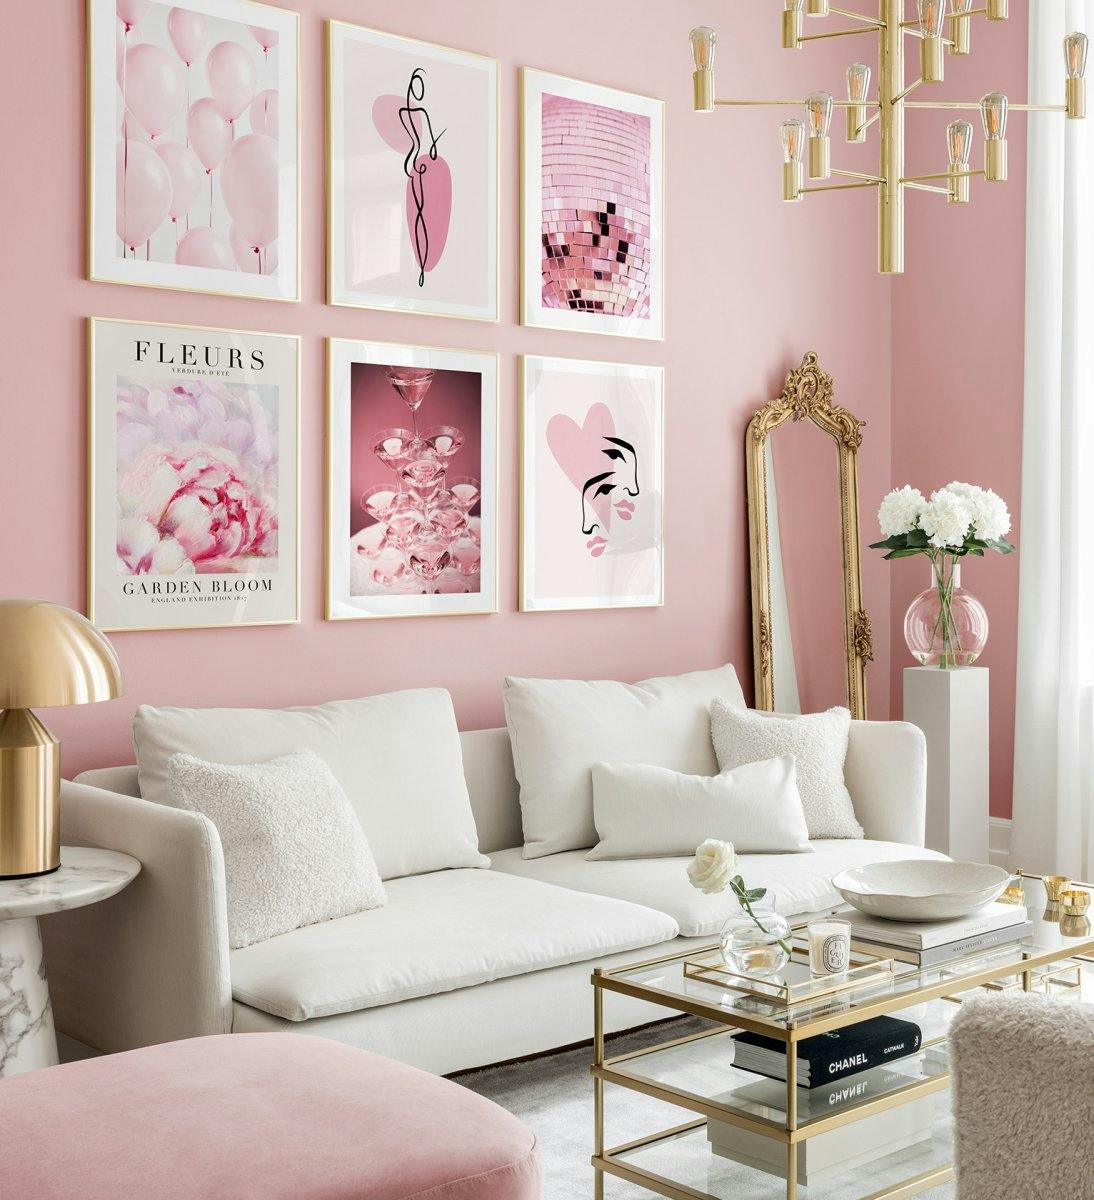 Różowa i romantyczna ściana galerii ilustracji i zdjęć ze złotymi ramkami do salonu